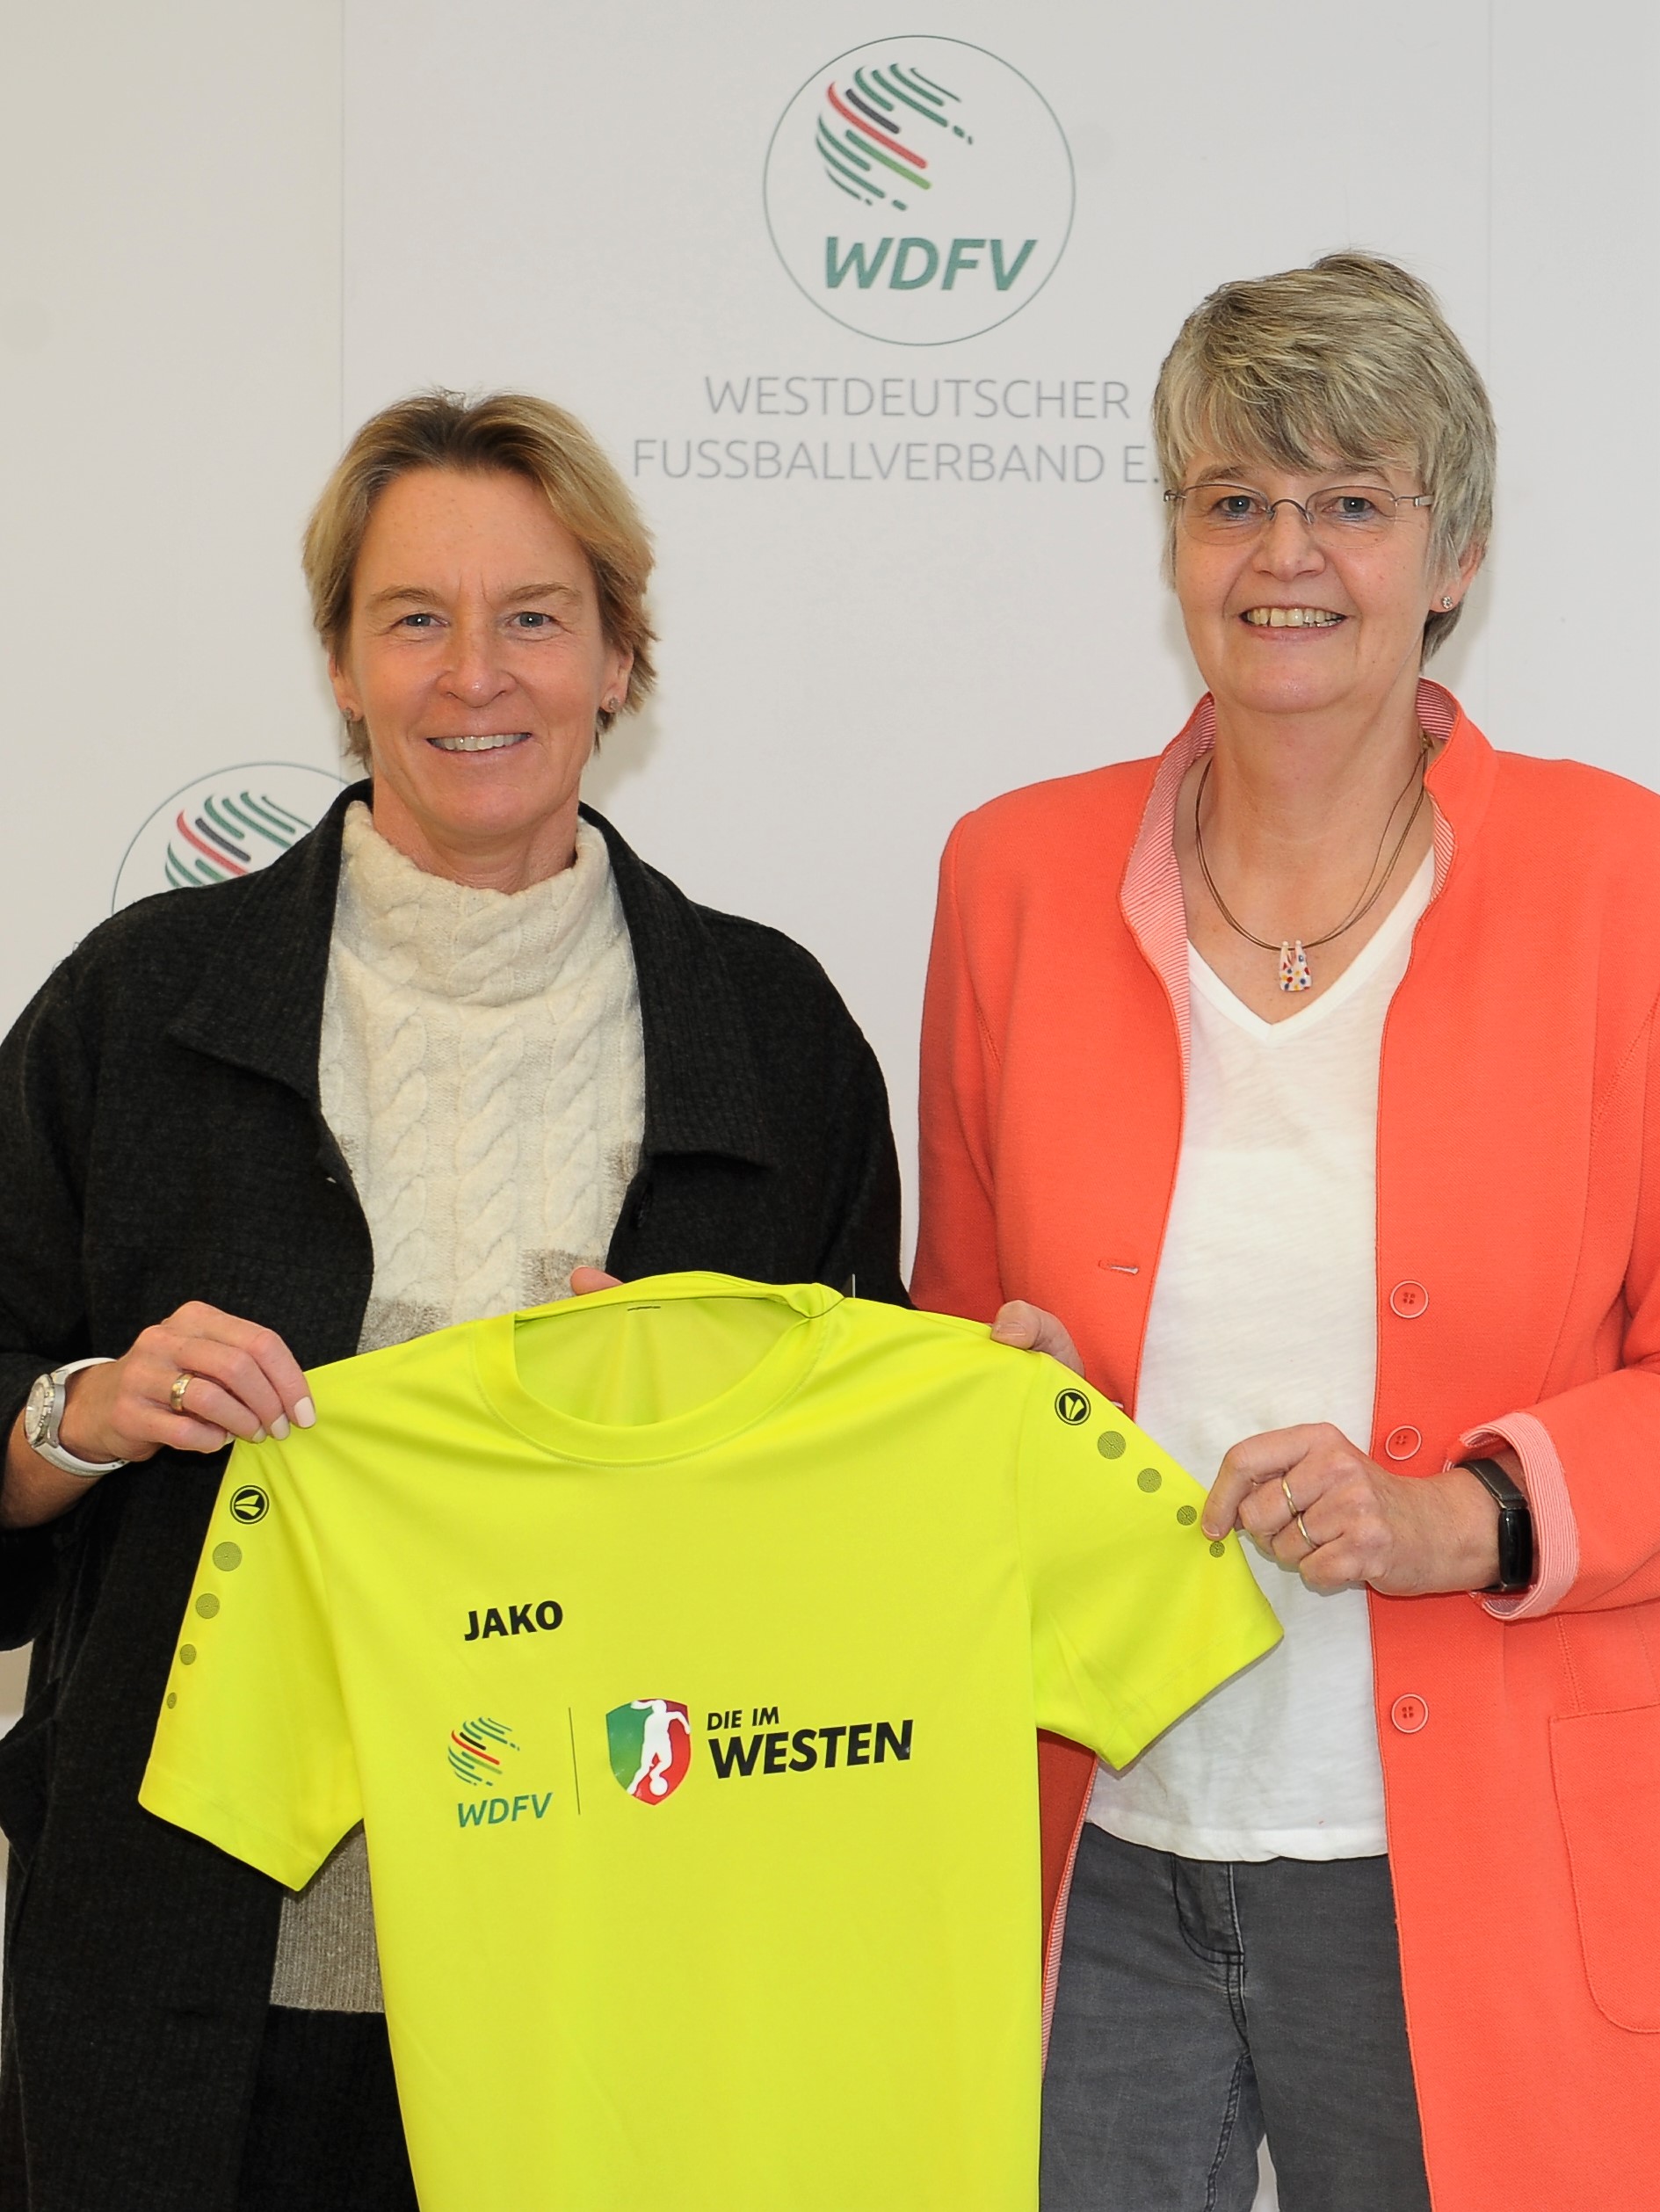 Freude über die positive Entwicklung im Frauen- und Mädchenfußball: Bundestrainerin Martina Voss-Tecklenburg (links) und Marianne Finke-Holtz, Vorsitzende des WDFV-Frauenfußballausschusses.